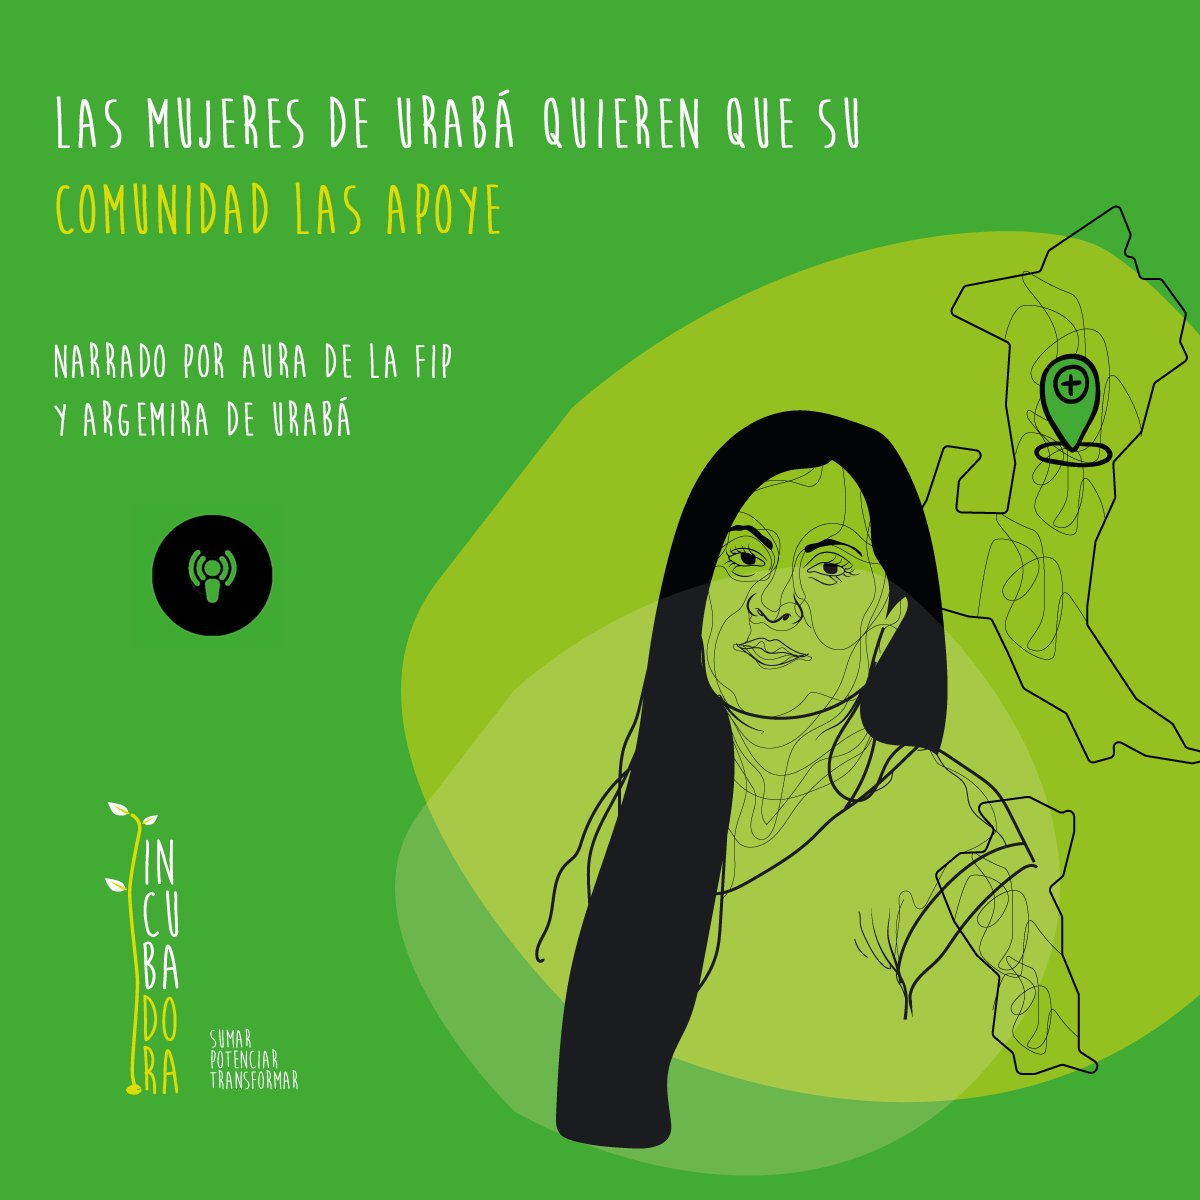 #FIPCast|  Las mujeres de Urabá quieren que su comunidad las apoyen 

Escúchalo en: 

📹Youtube: youtu.be/3EhTPoSmZfY
🎙️Spotify:  spoti.fi/3cpSmdx